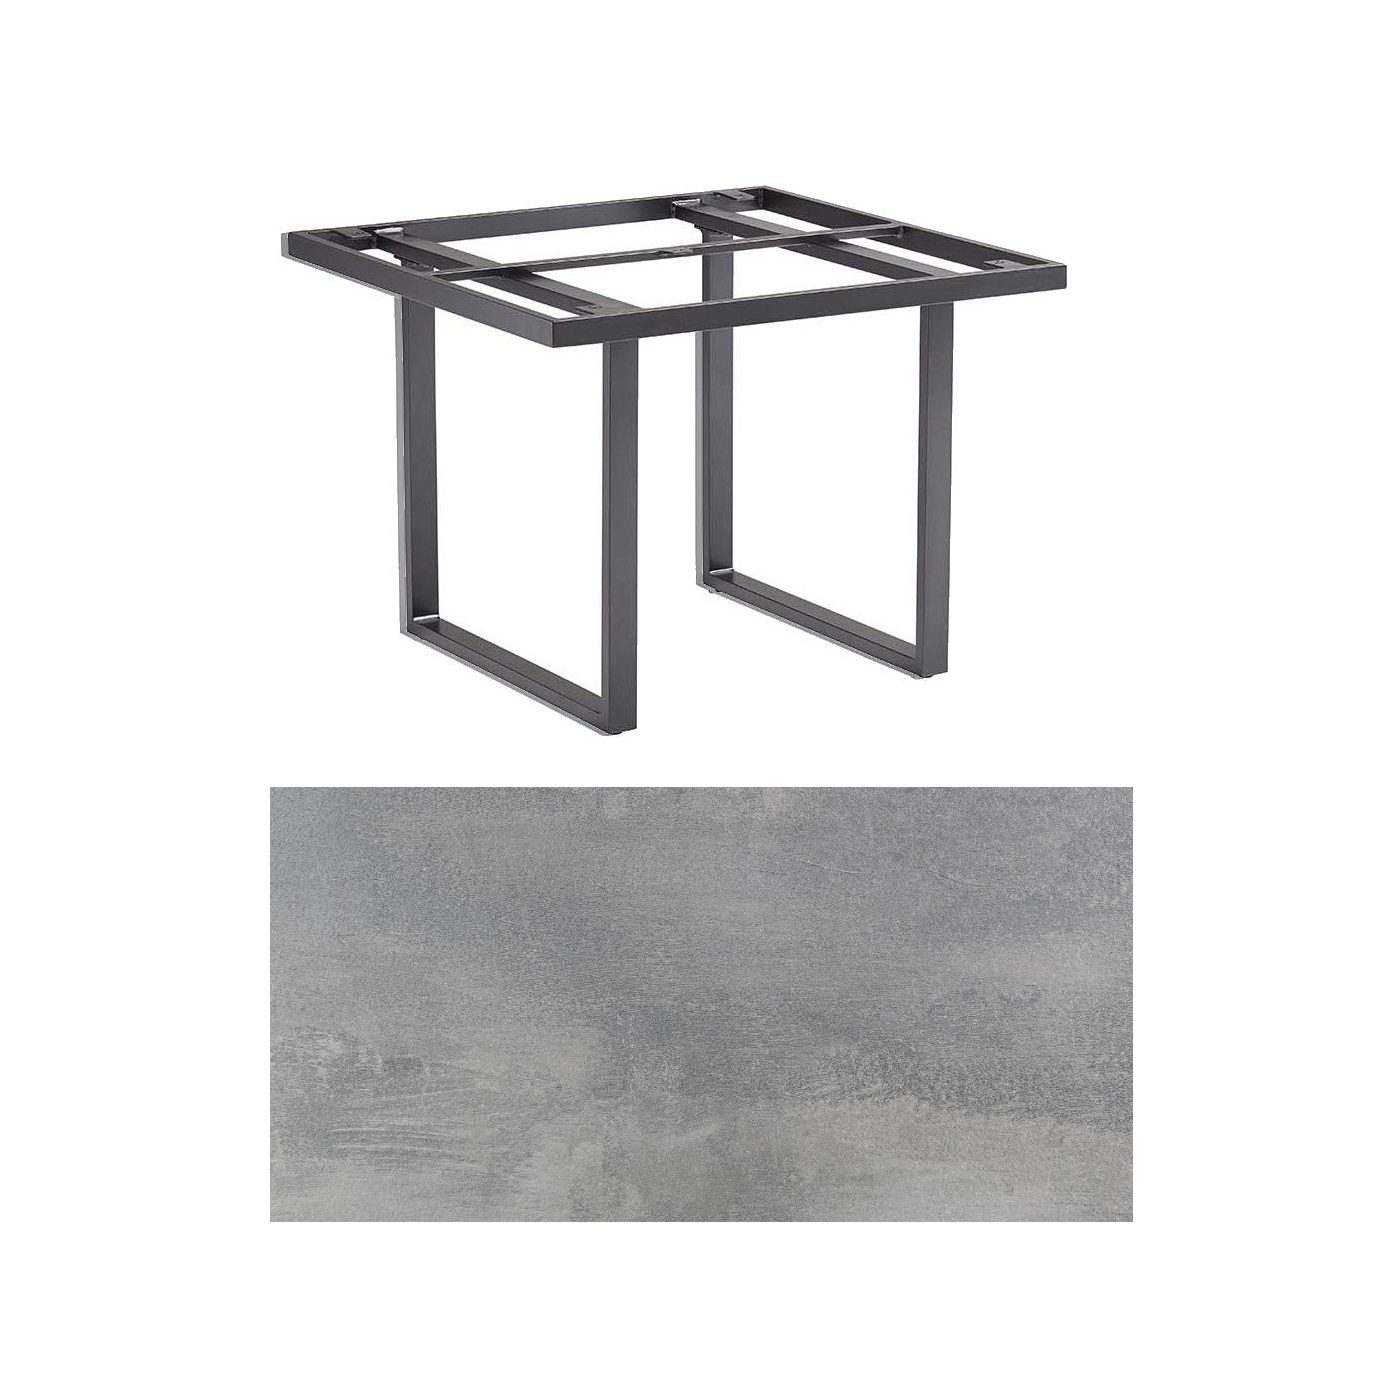 Kettler "Skate" Gartentisch Casual Dining, Gestell Aluminium anthrazit, Tischplatte HPL silber-grau, 95x95 cm, Höhe ca. 68 cm